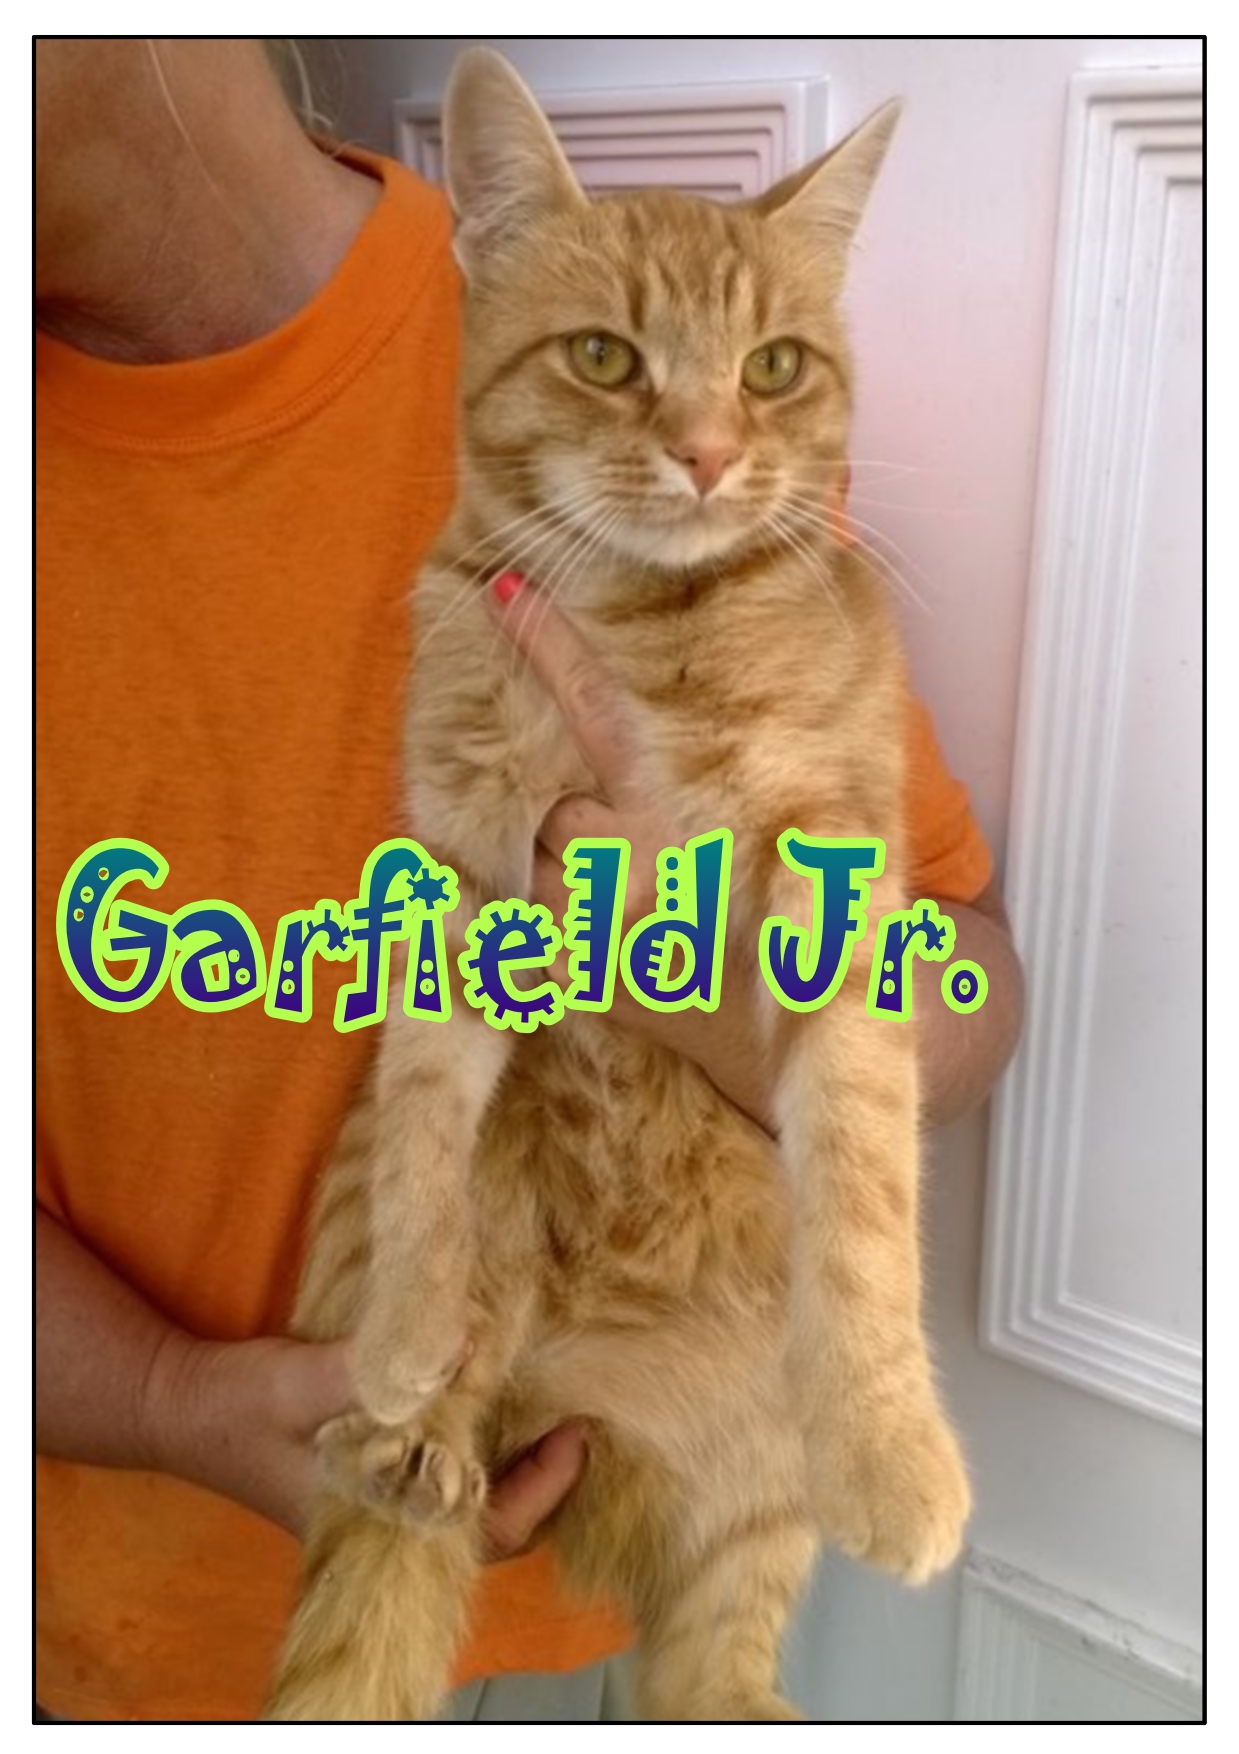 Garfield Jr_3.jpg